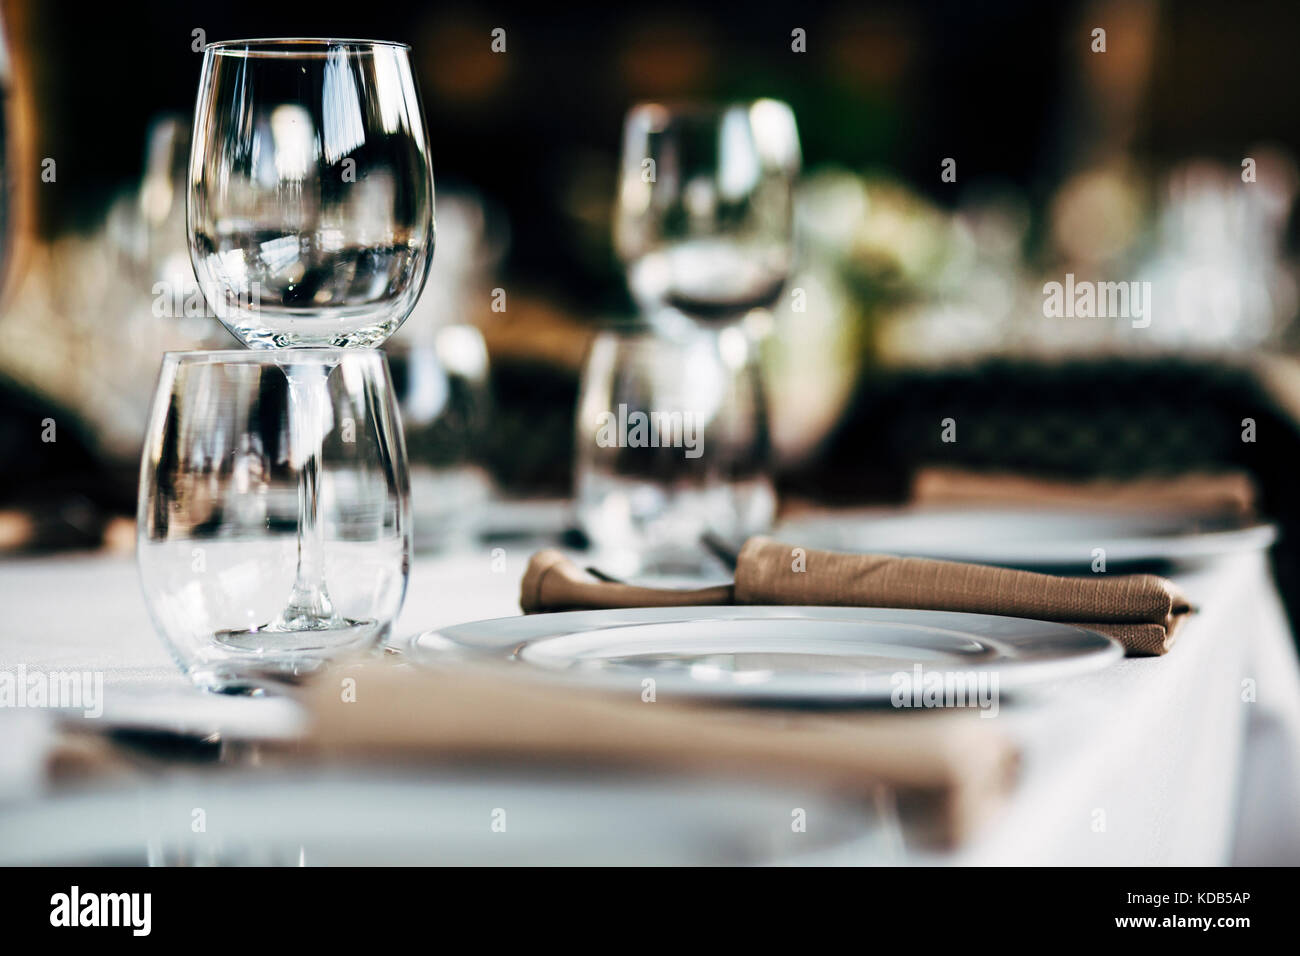 Configuración de la tabla de lujo para cenar con y cristalería, hermoso fondo borroso. Preparación de las vacaciones de navidad y hannukah la cena por la noche. Foto de stock